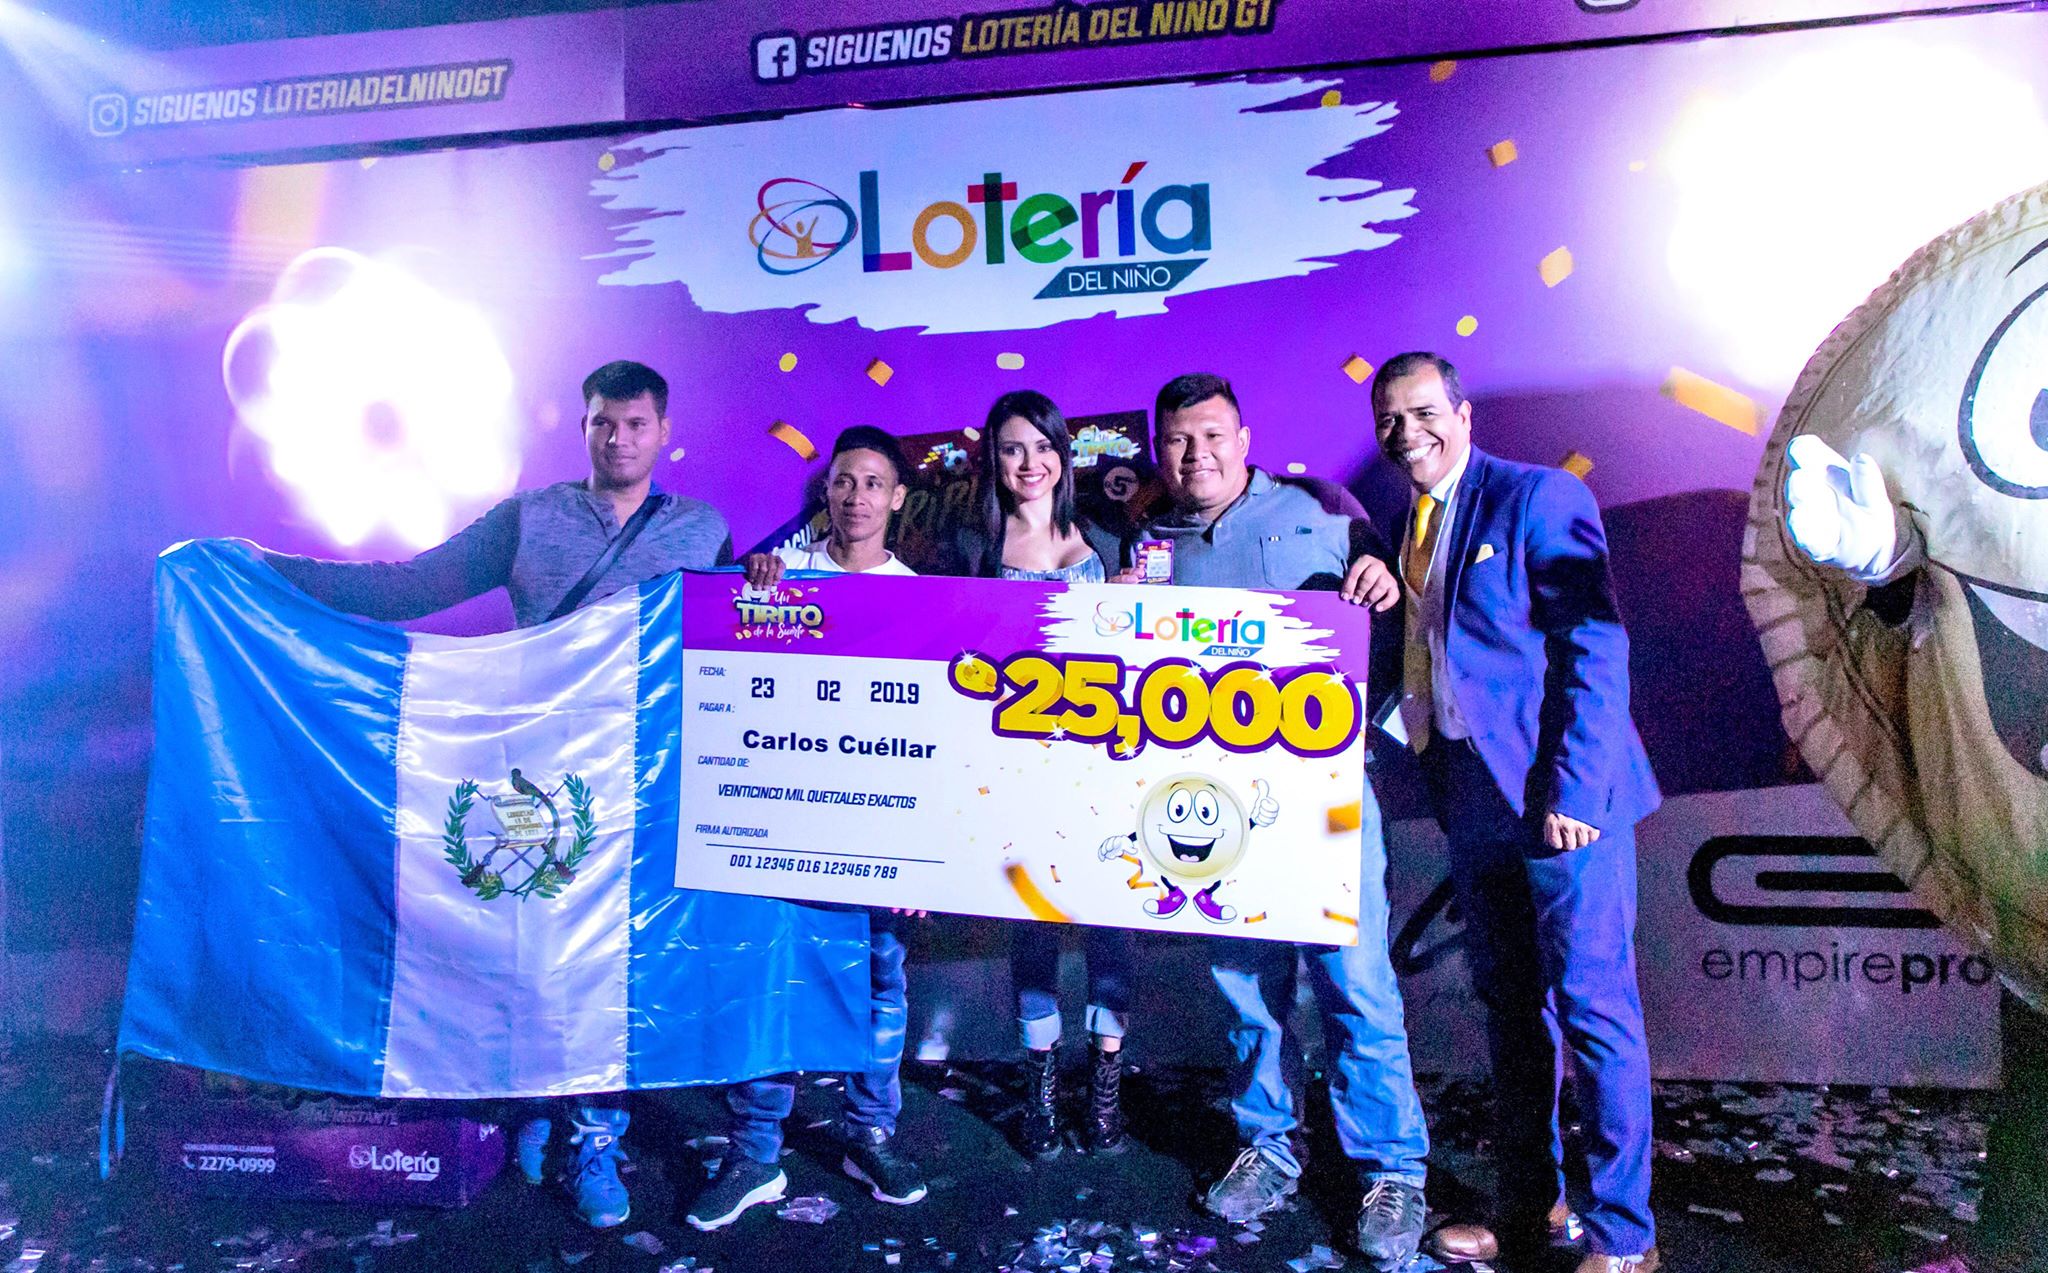 Lotería del niño Guatemala